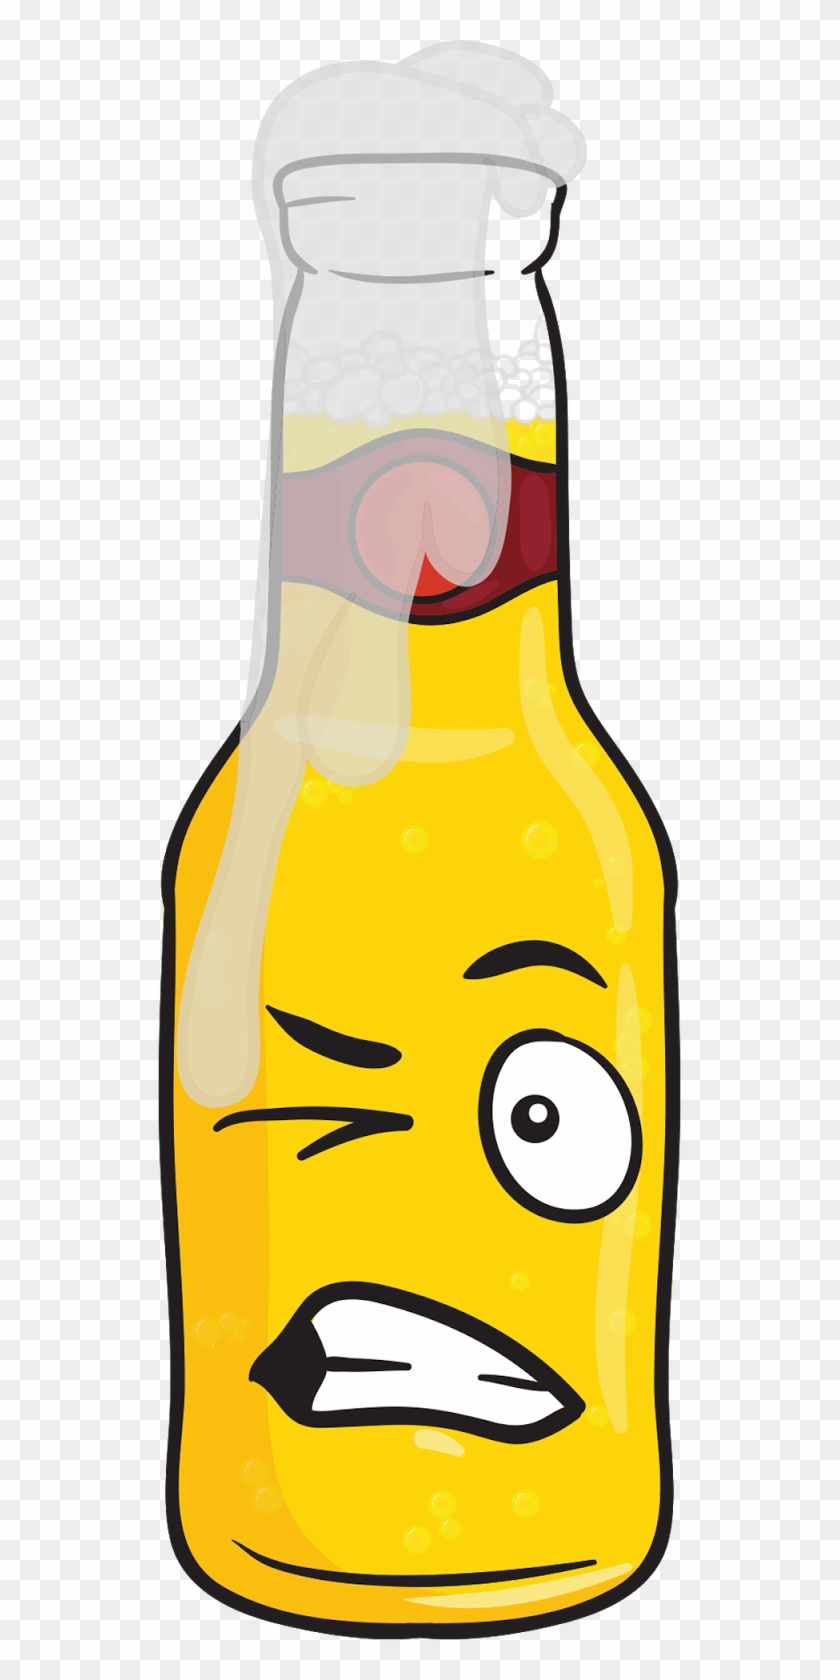 Upcoming Jacksonville Craft Beer Events - Beer Bottle Emoji - Free Transpar...